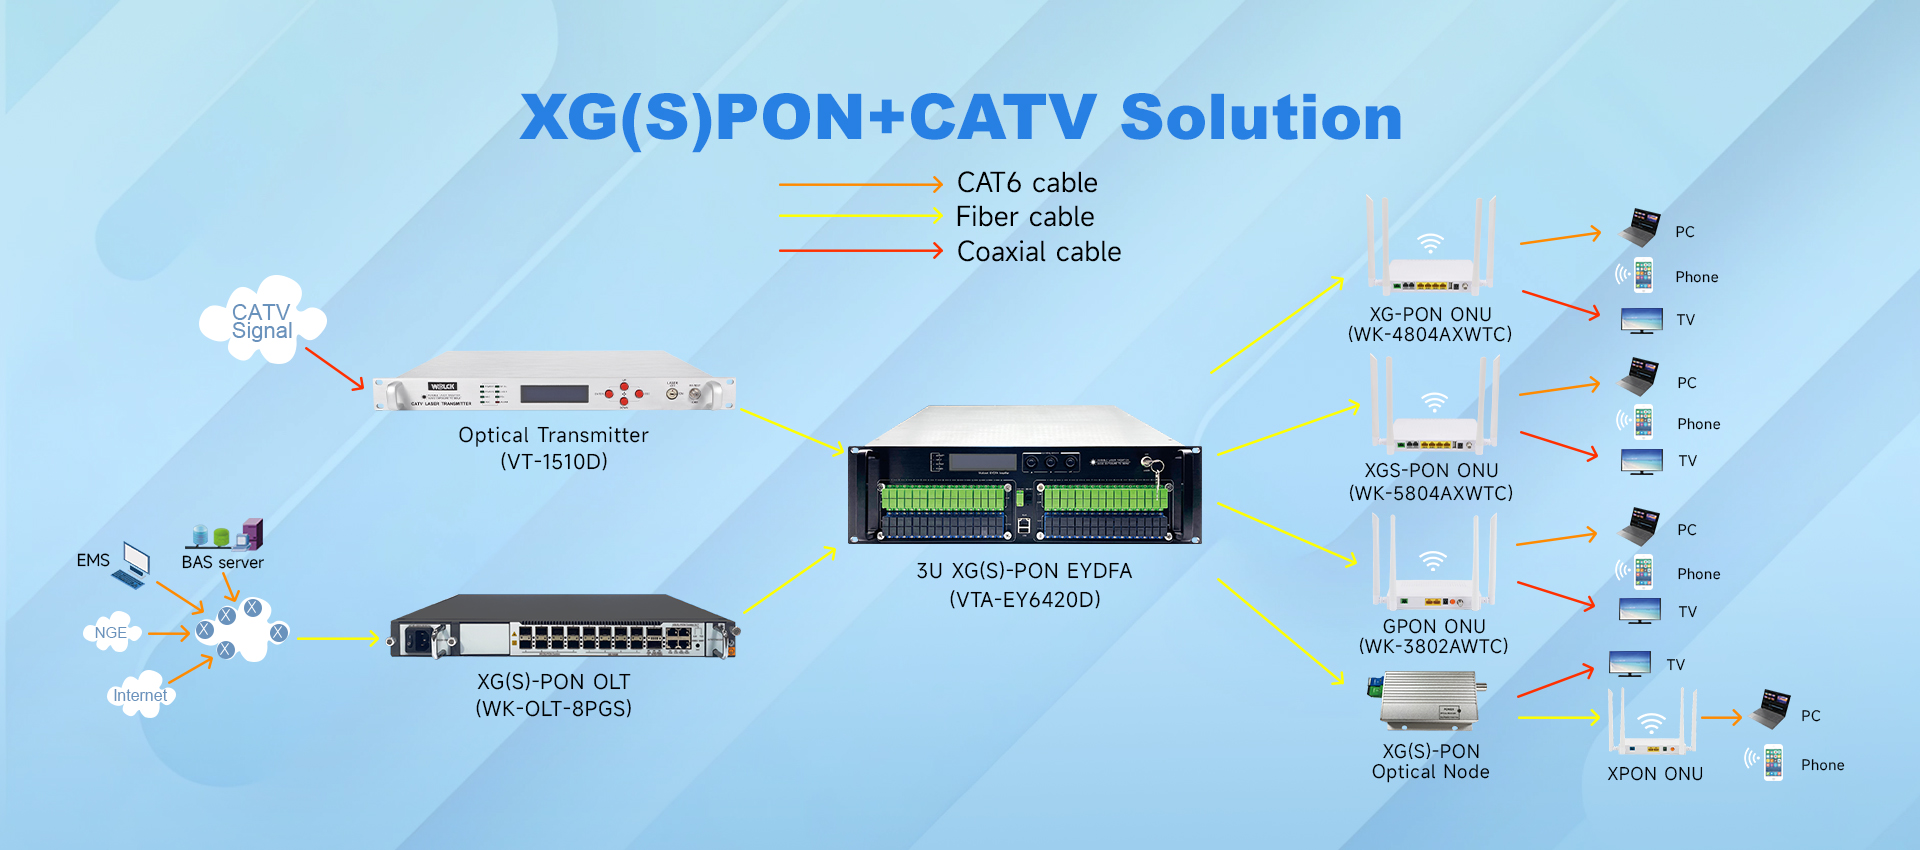 XGPON+CATV SOLUTION